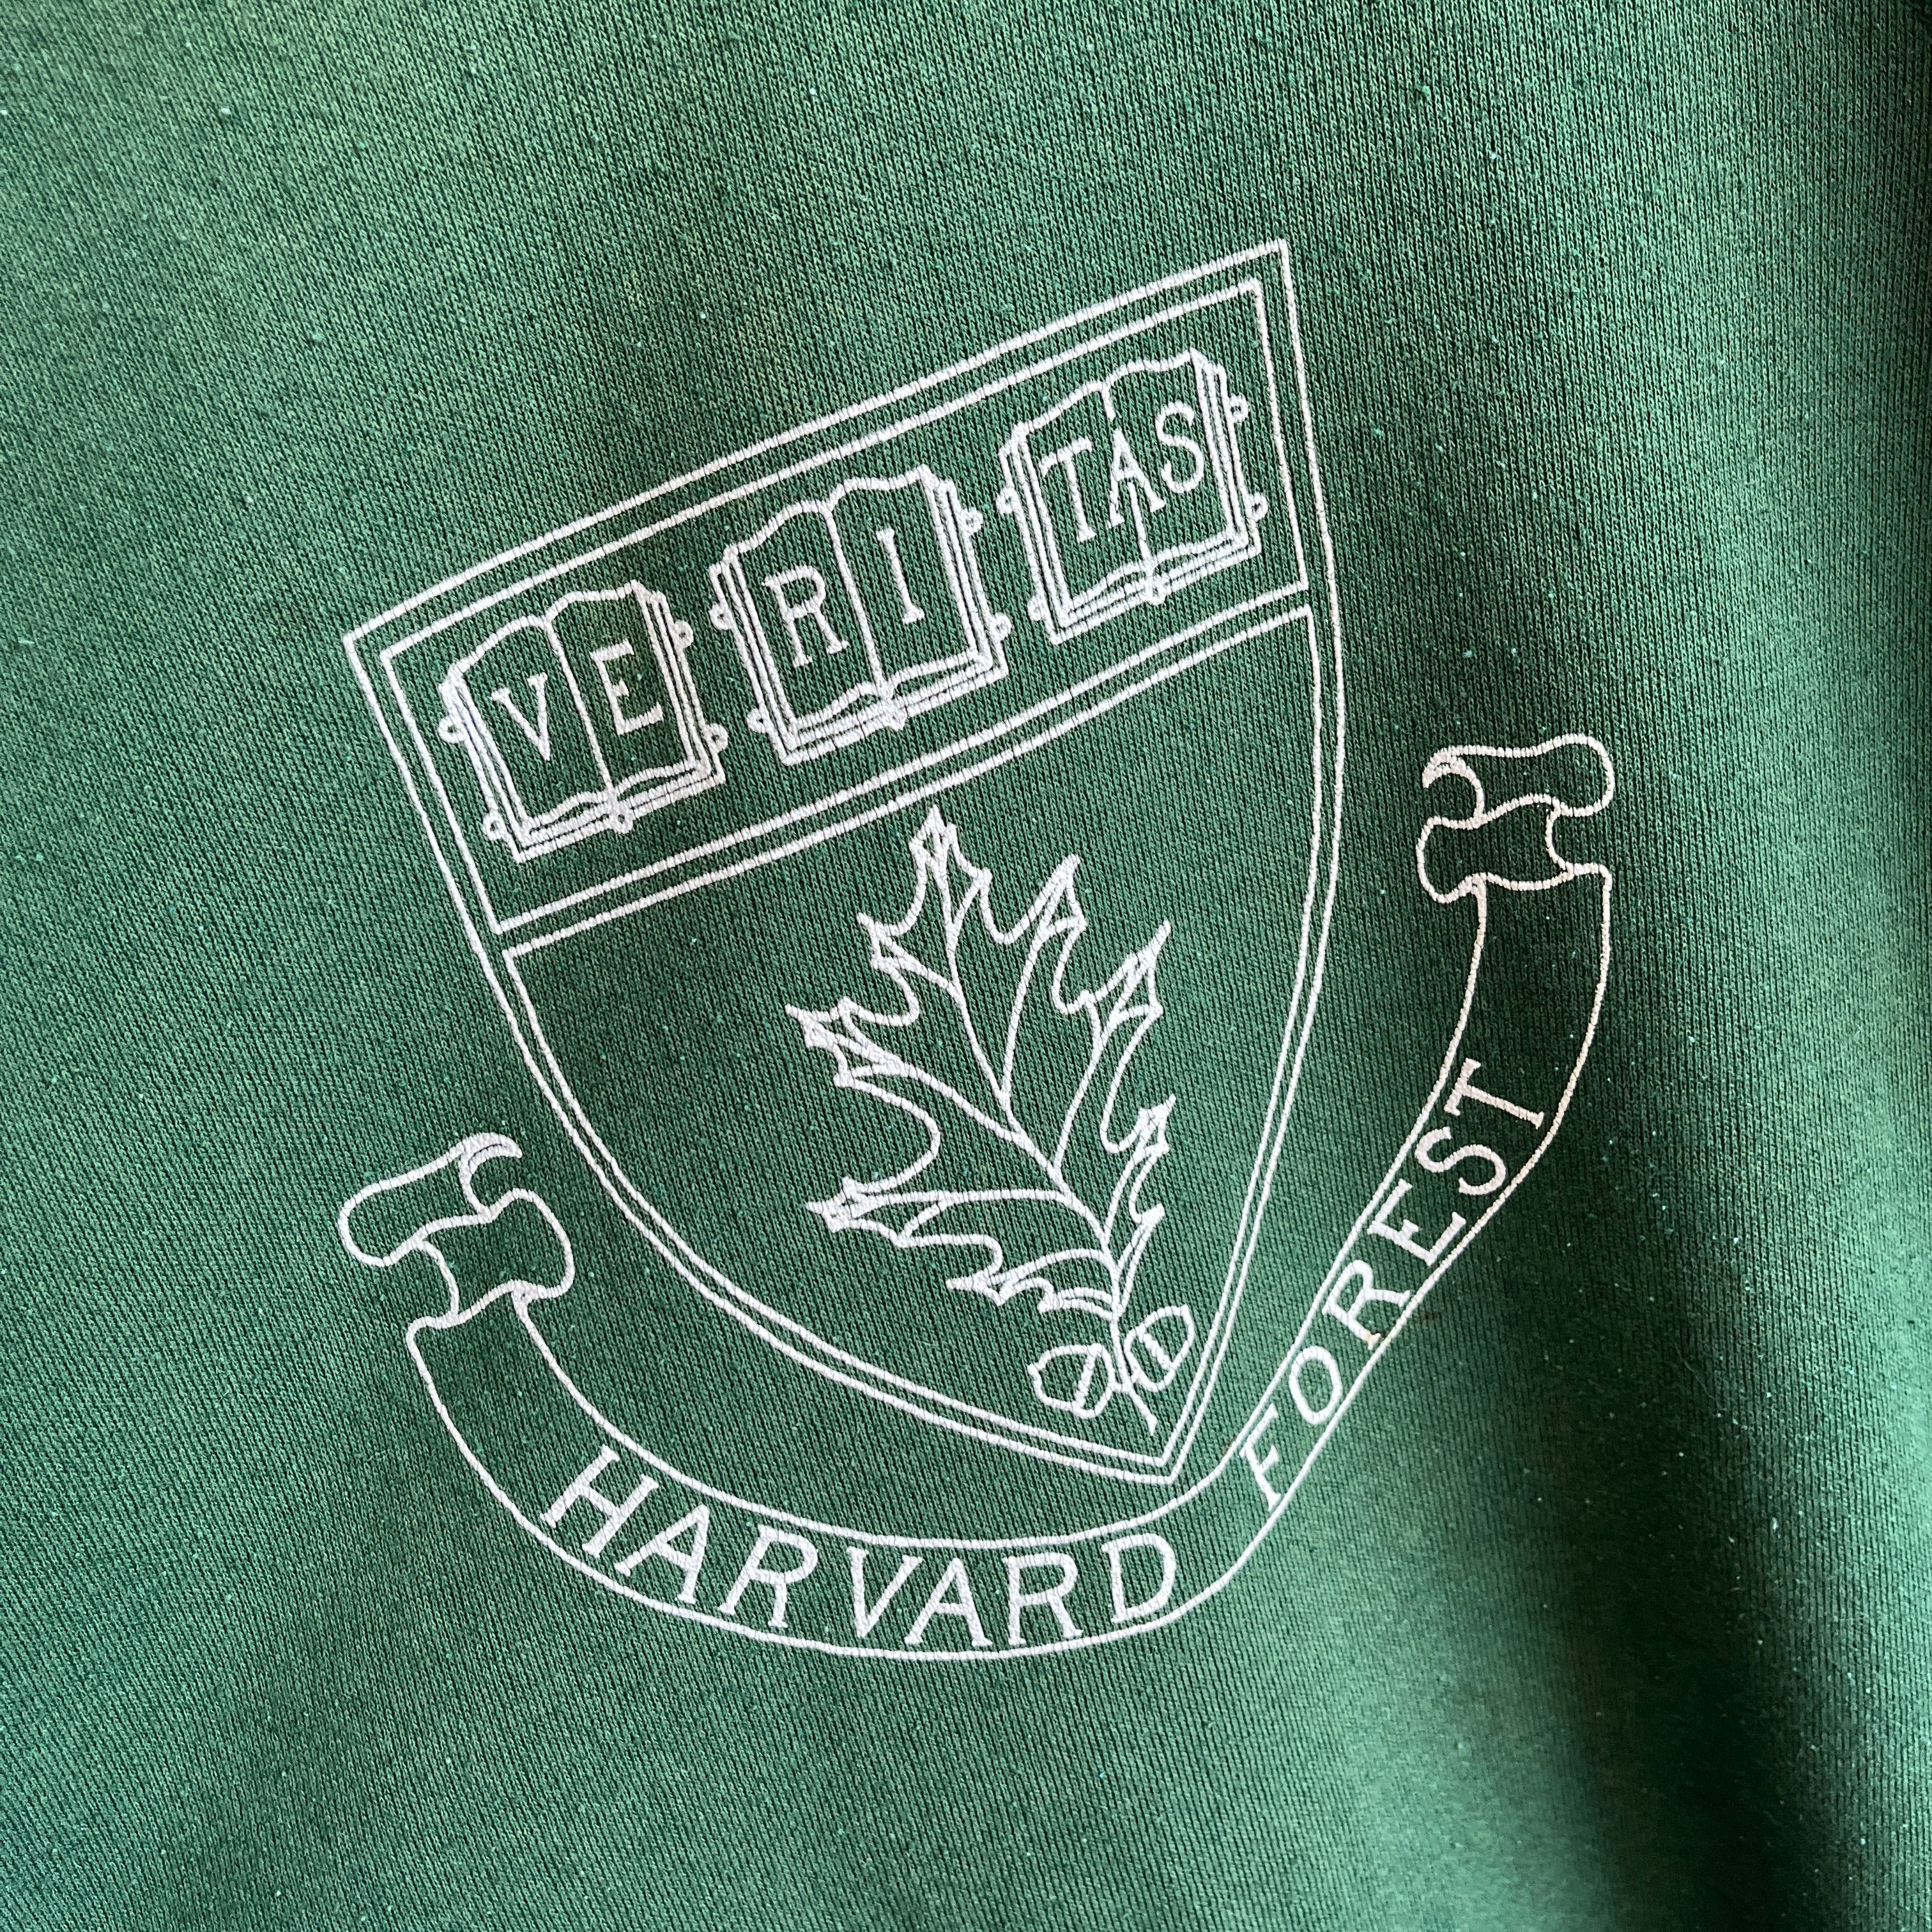 Sweat-shirt Harvard Forest (École de foresterie) des années 1980